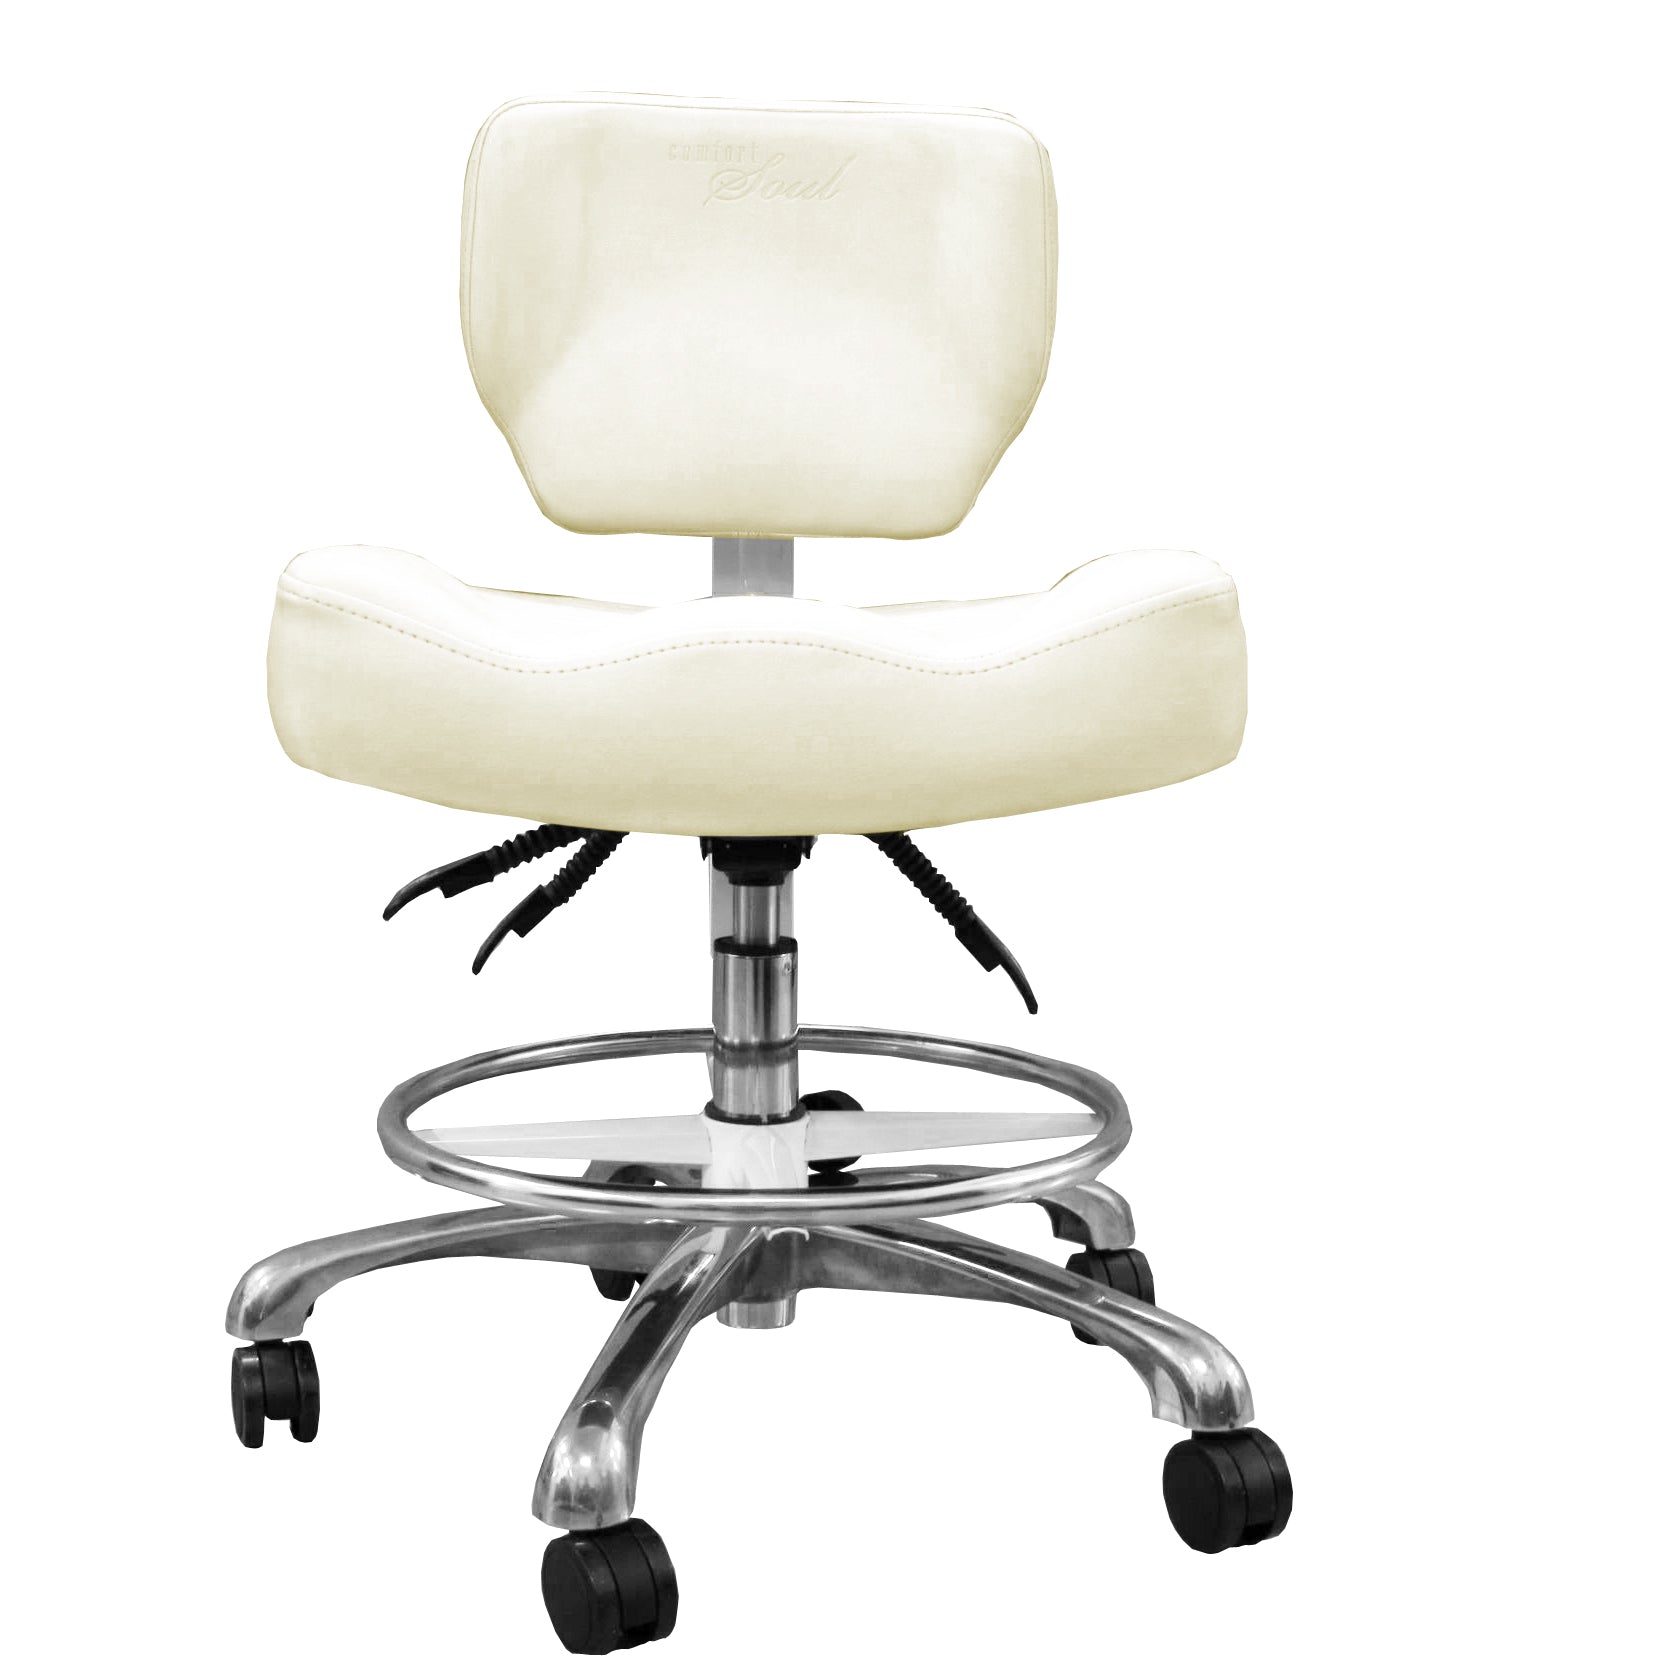 Clinician Chair